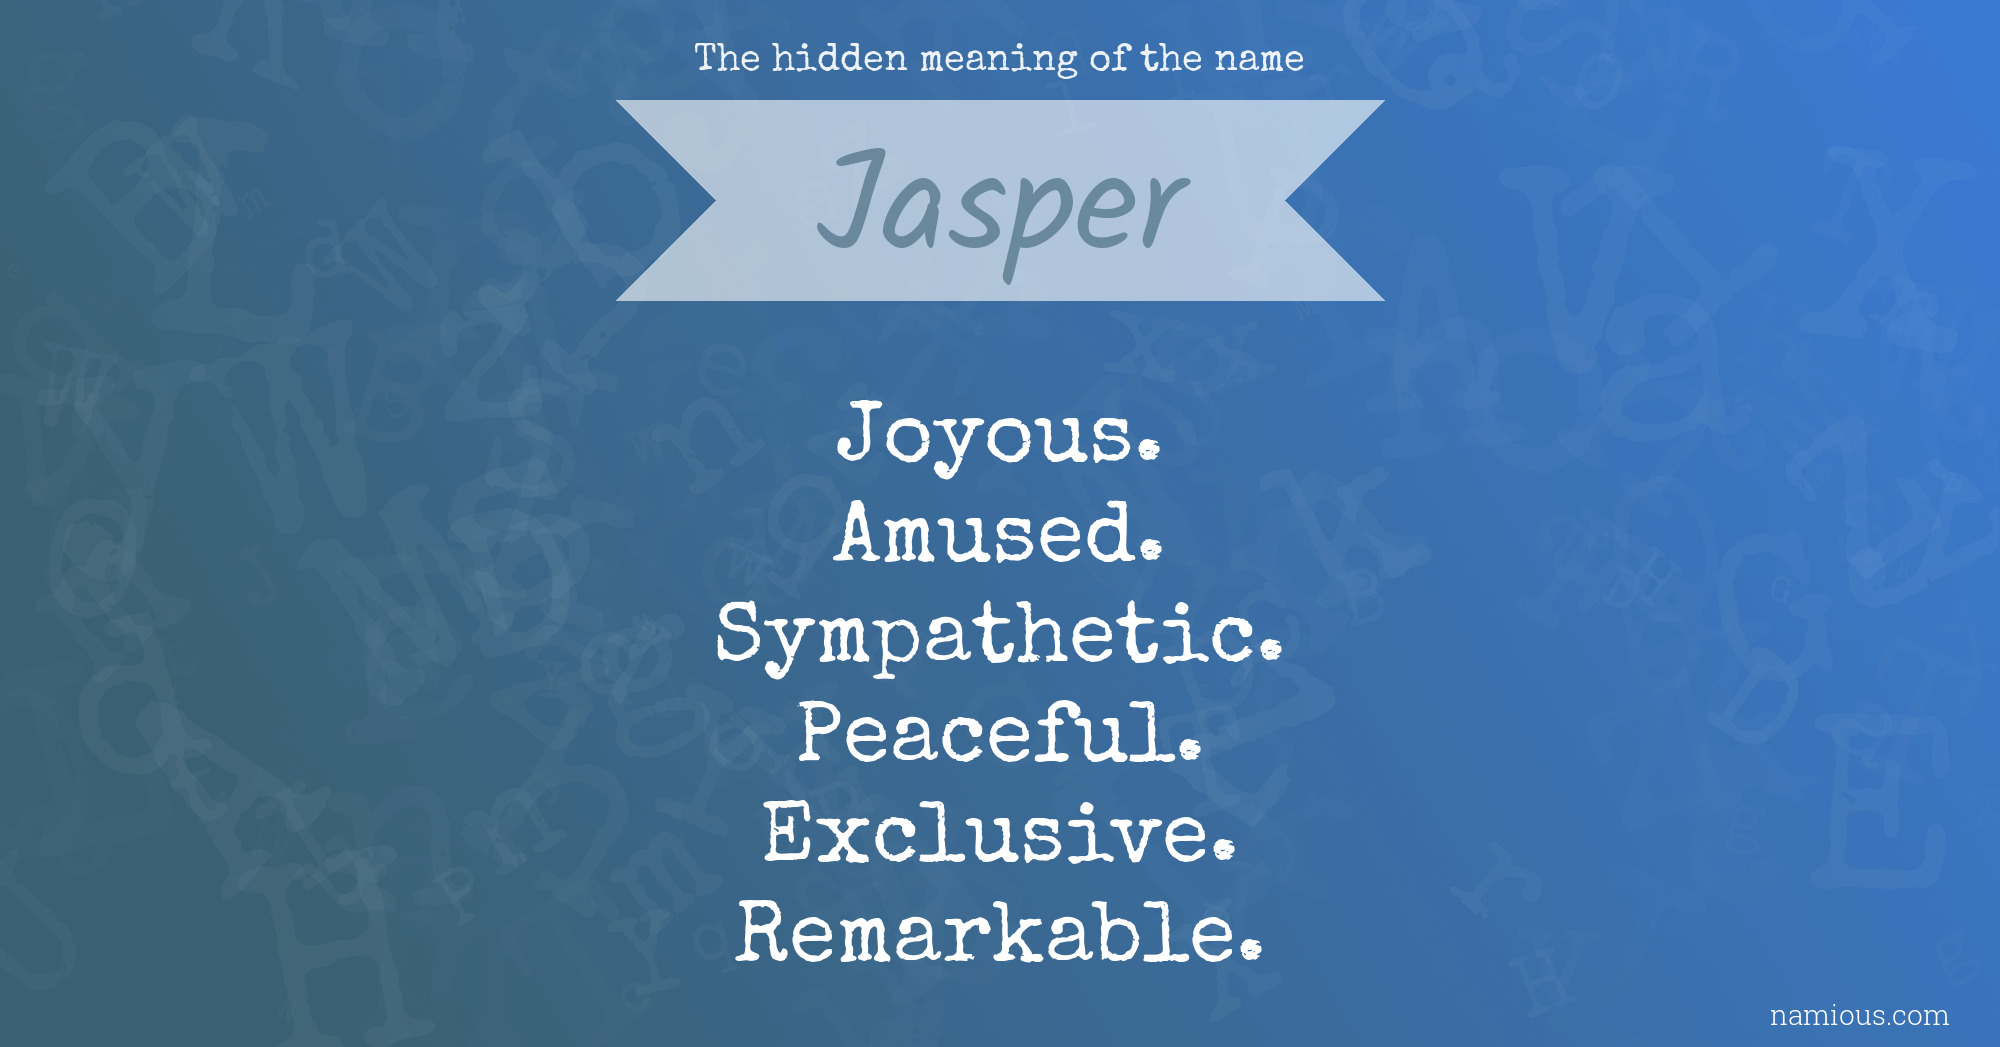 jasper name meaning